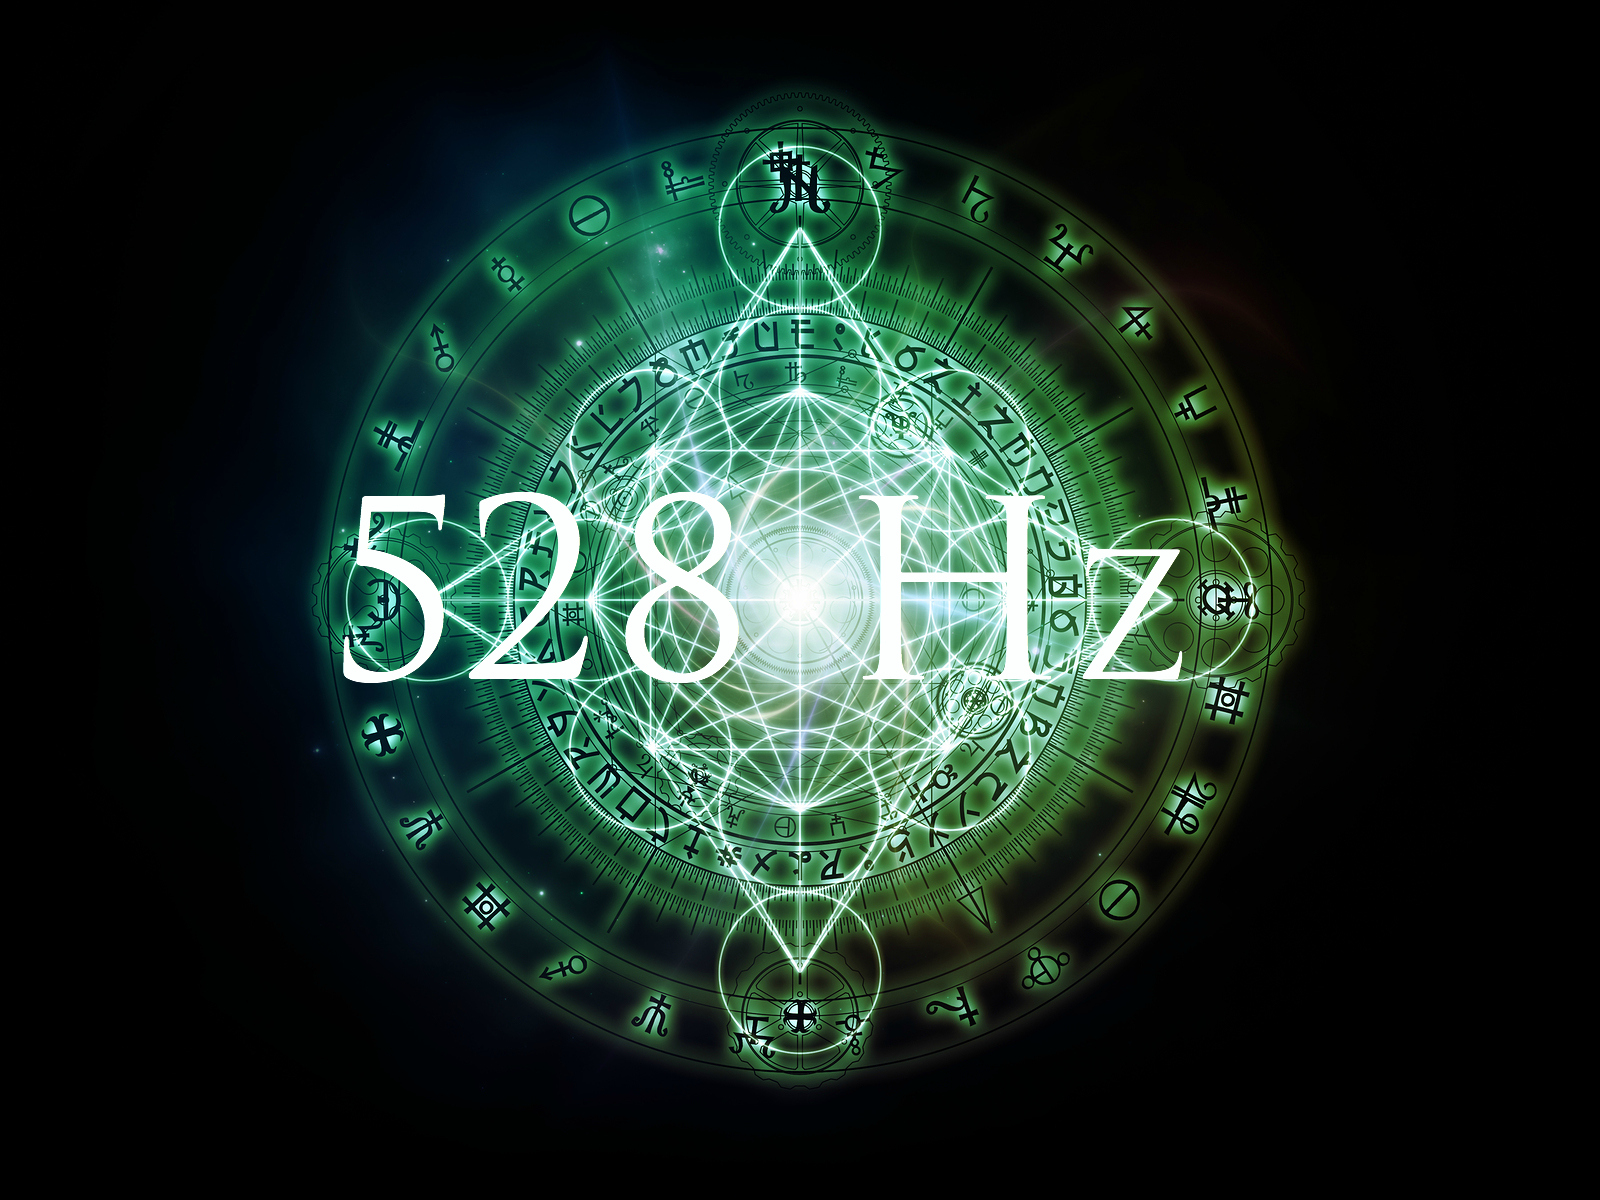 Frequency hz. 528 Hz. Киматика 528. Астрология и Алхимия. Сакральная геометрия символы бессмертия.